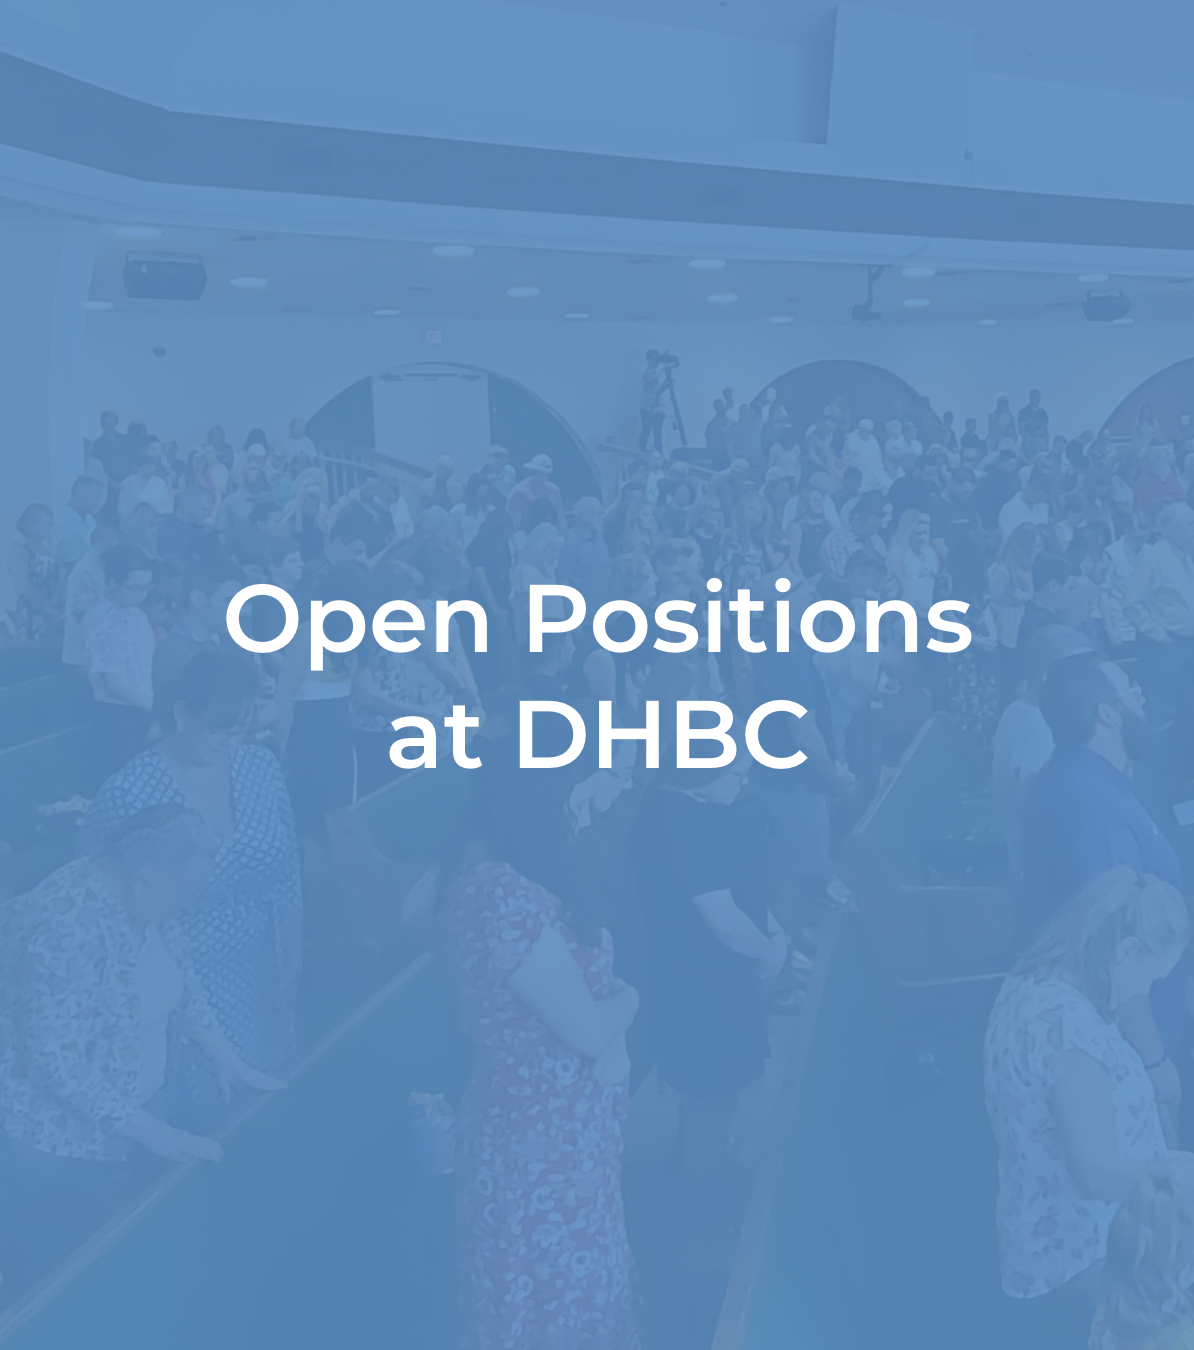 DHBC job openings